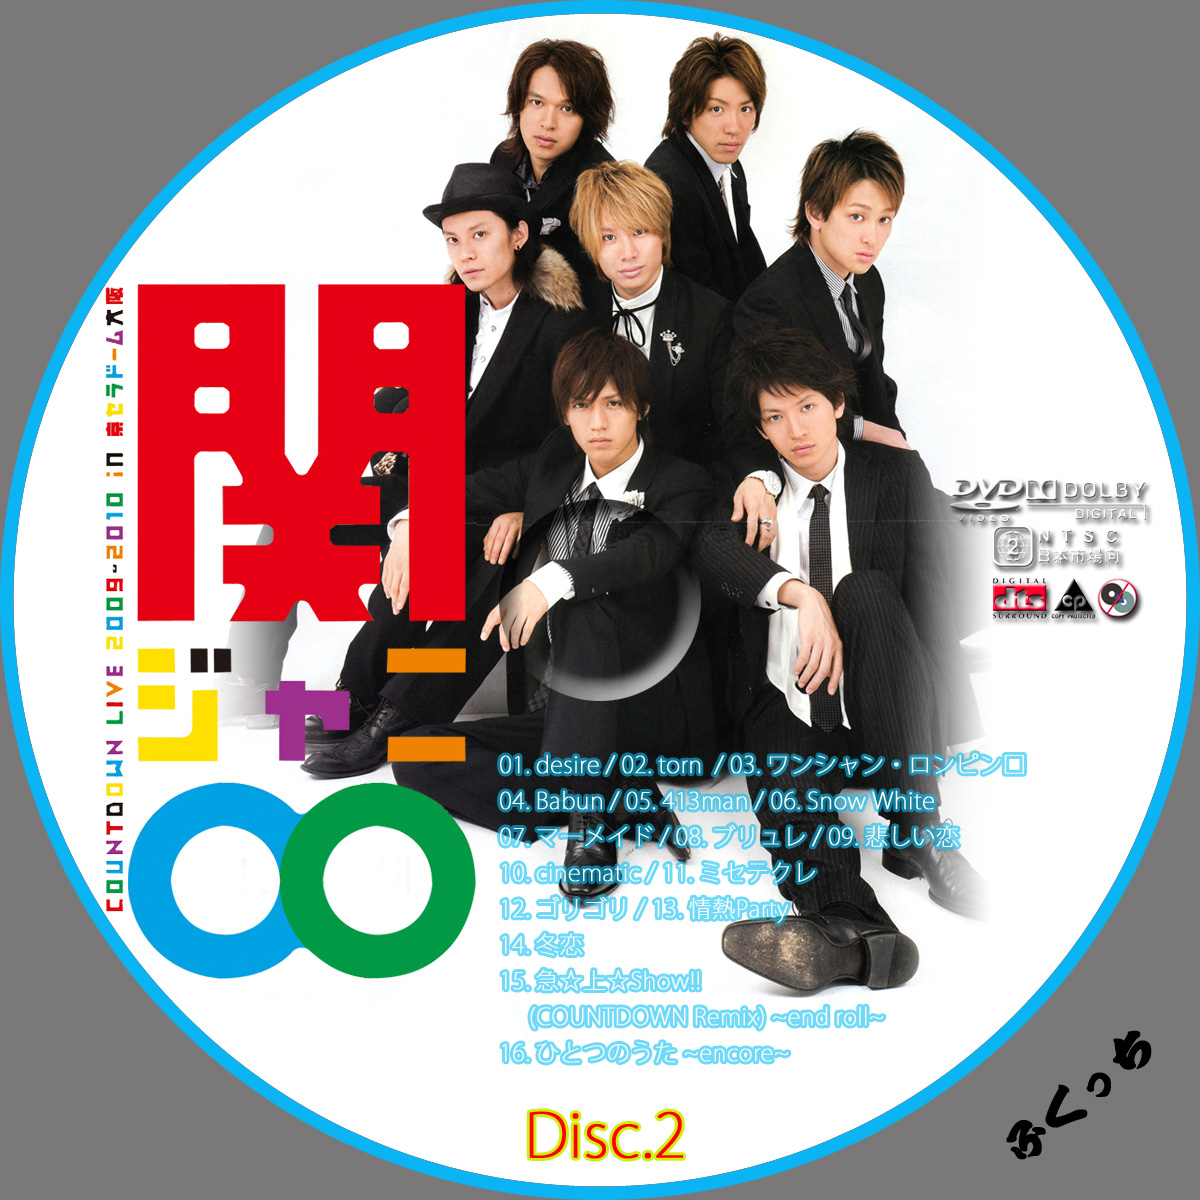 ふくっちの音楽CD/DVDカスタムレーベル 関ジャニ∞ - COUNTDOWN : 関ジャニ∞のCD・DVDラベル画像リンク集 - NAVER まとめ